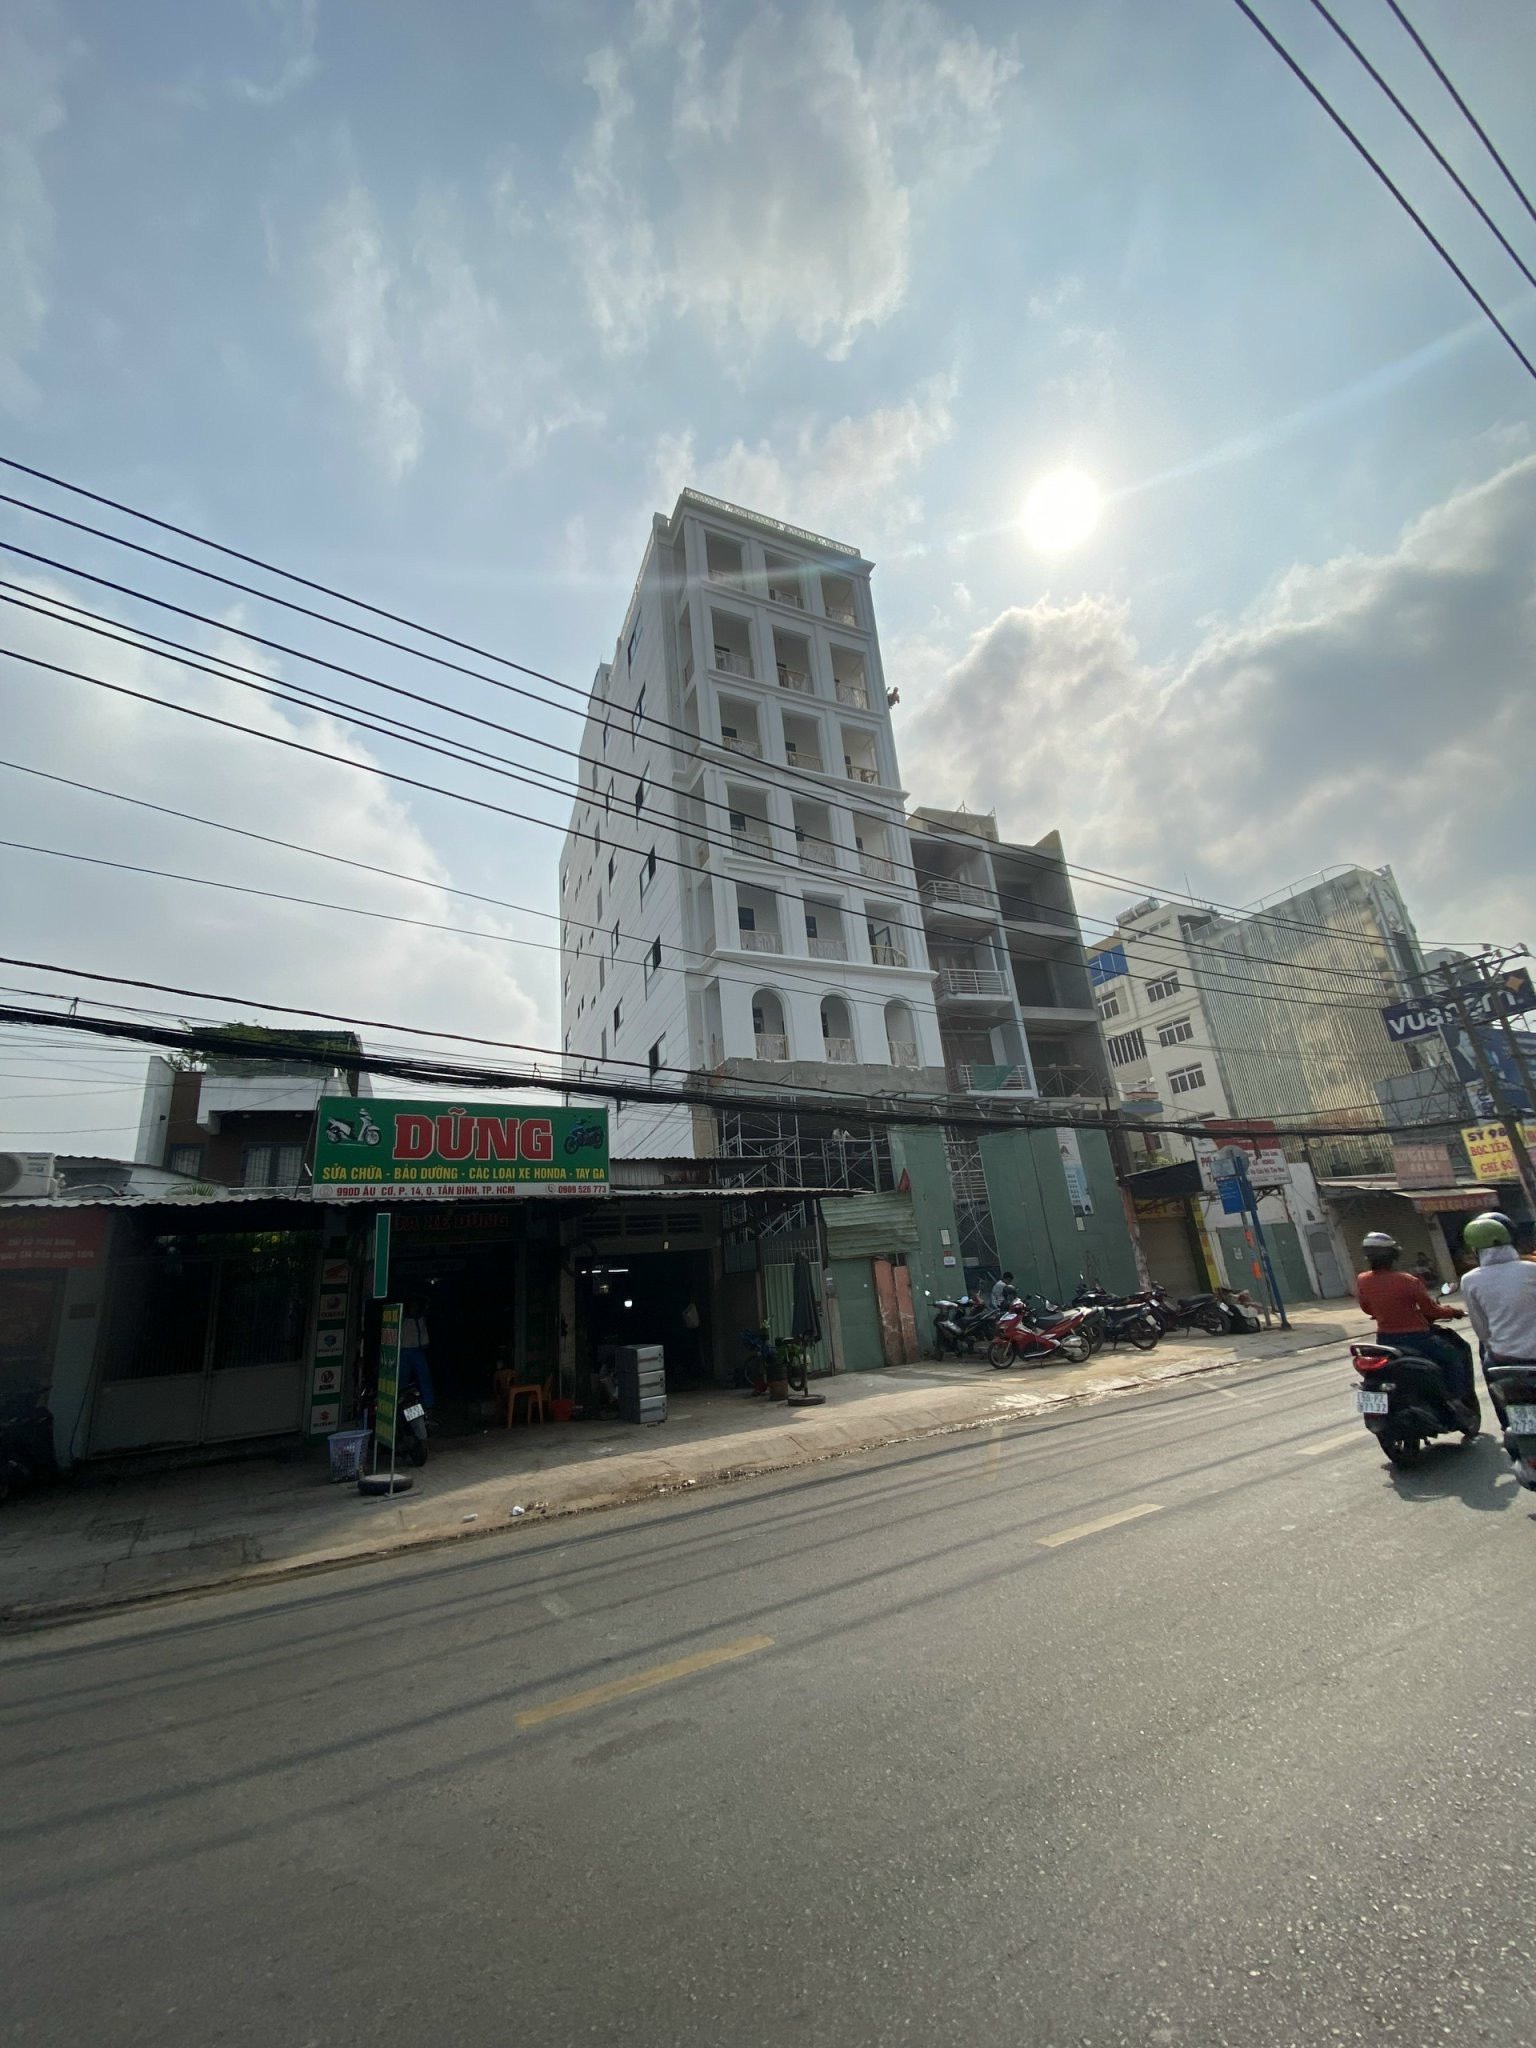 Bán nhà 2 mặt tiền D2 - Ung Văn Khiêm, Quận Bình Thạnh. DT: CN 536,7m2. Giá: 105 tỷ.